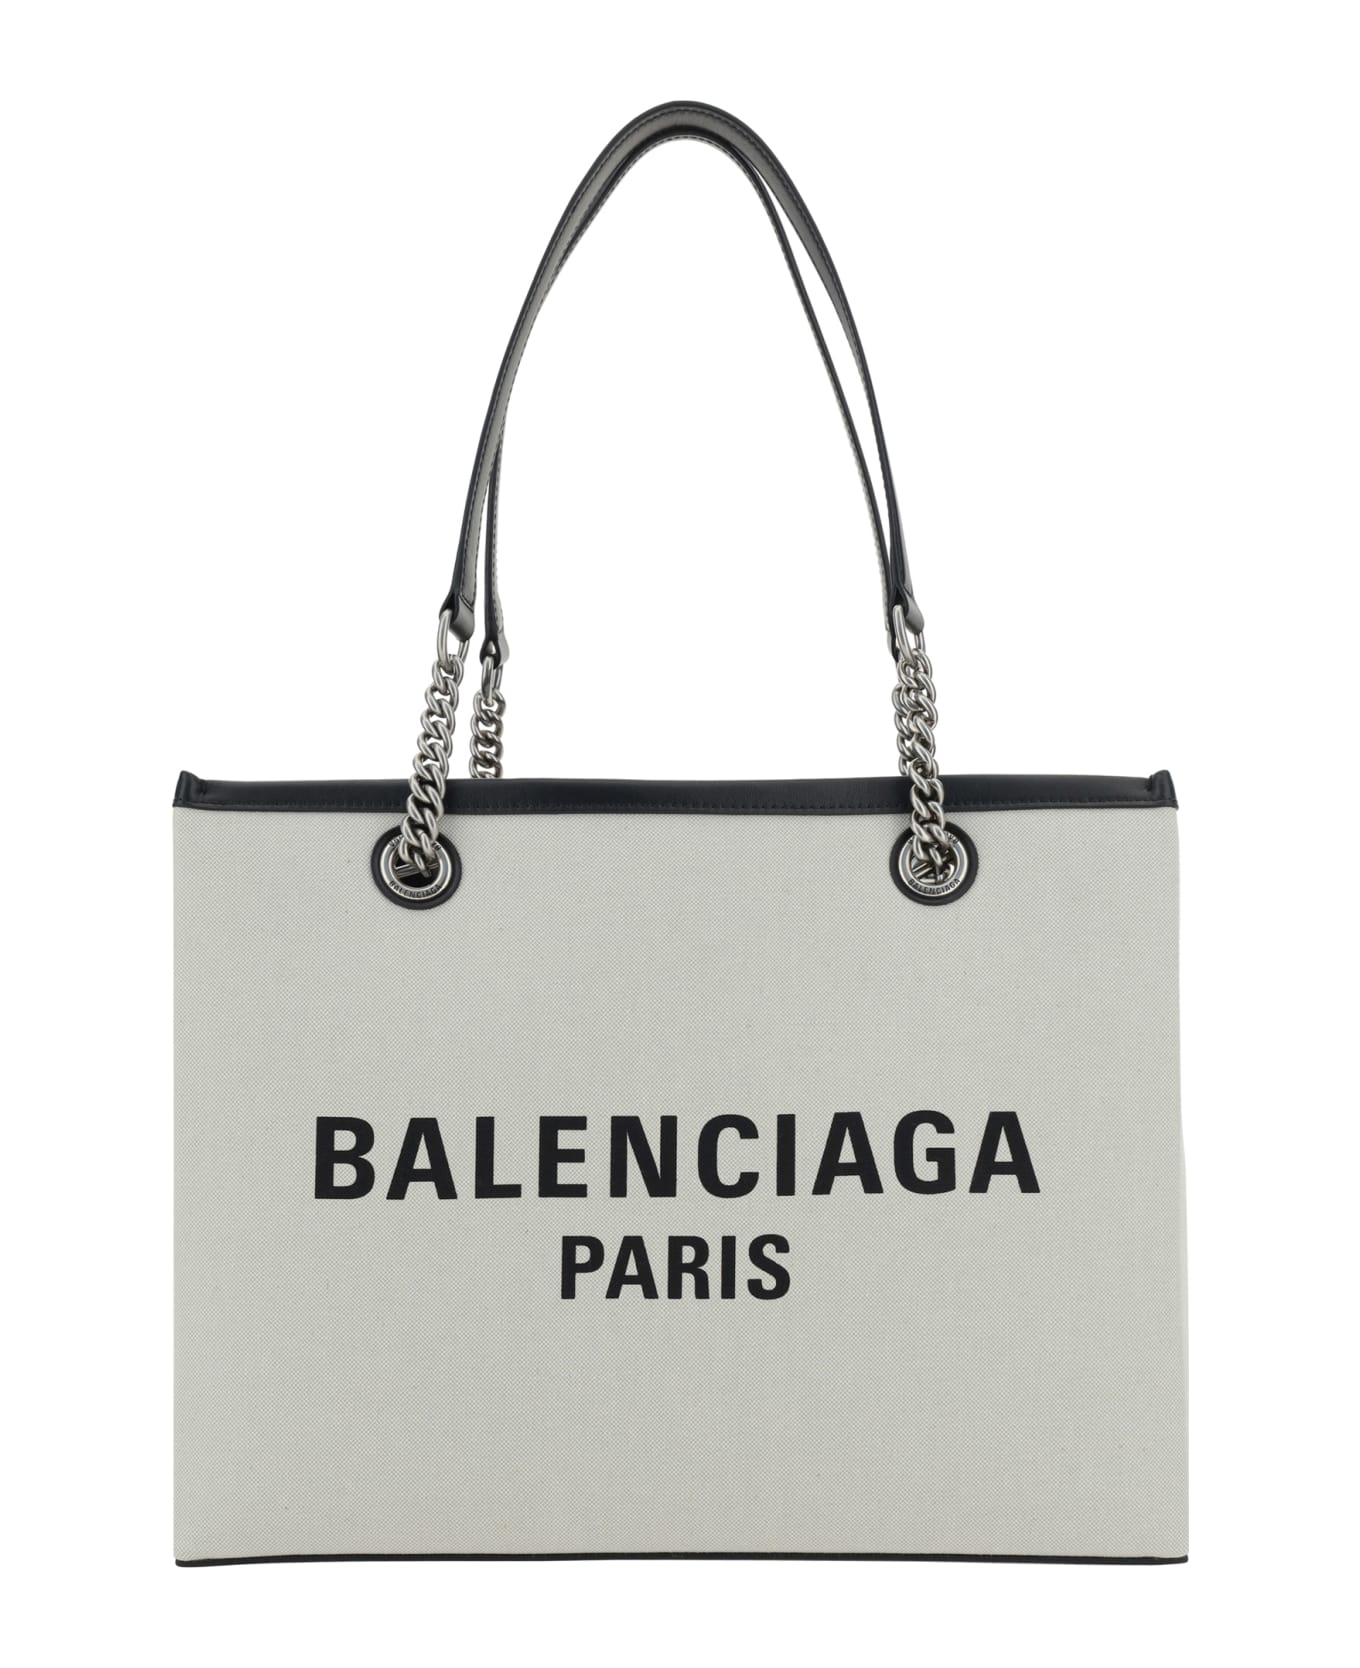 Balenciaga Duty Free Shopping Bag - Naturel